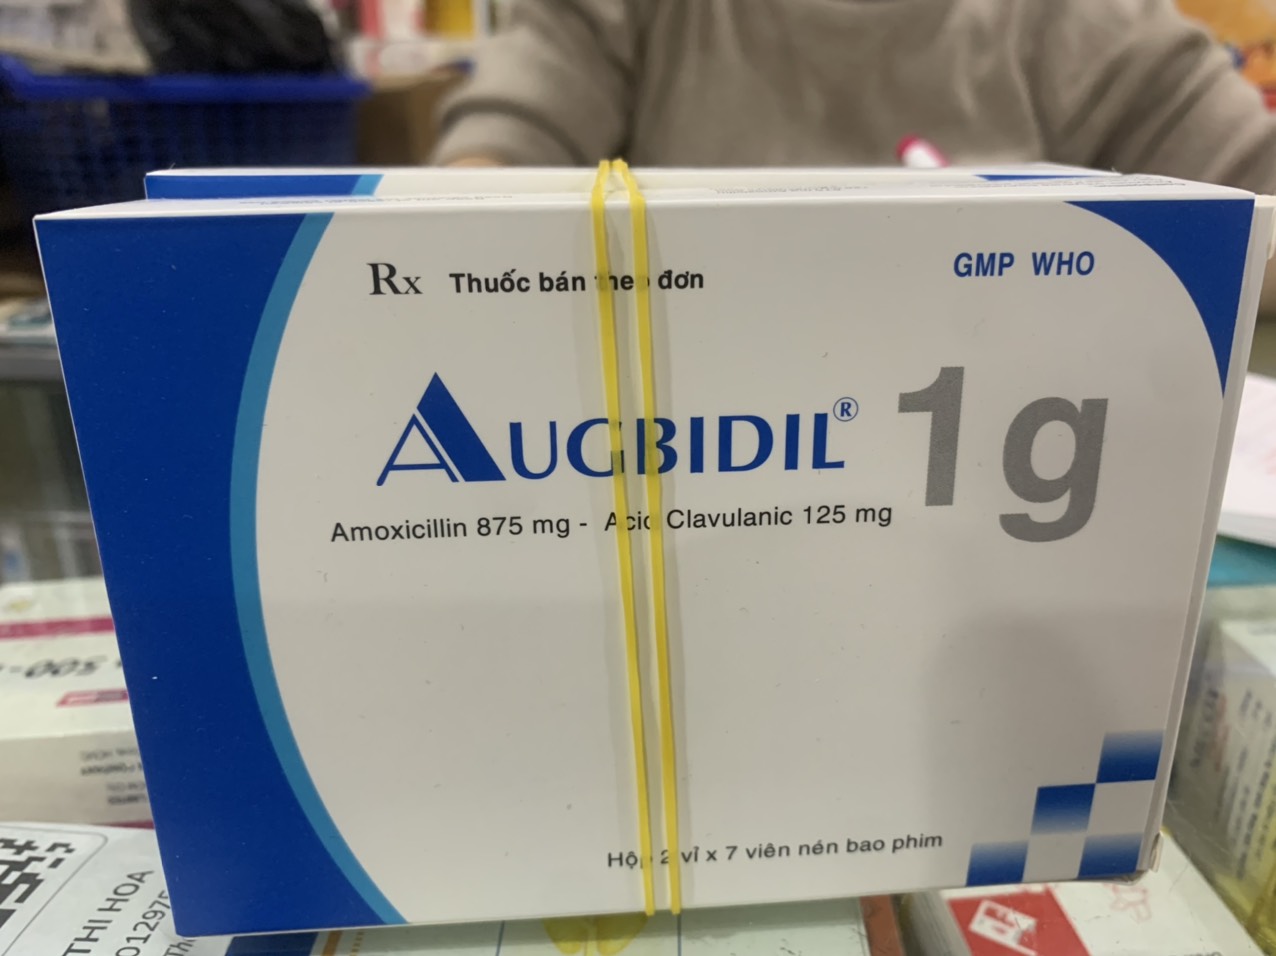 Augbidil 1g